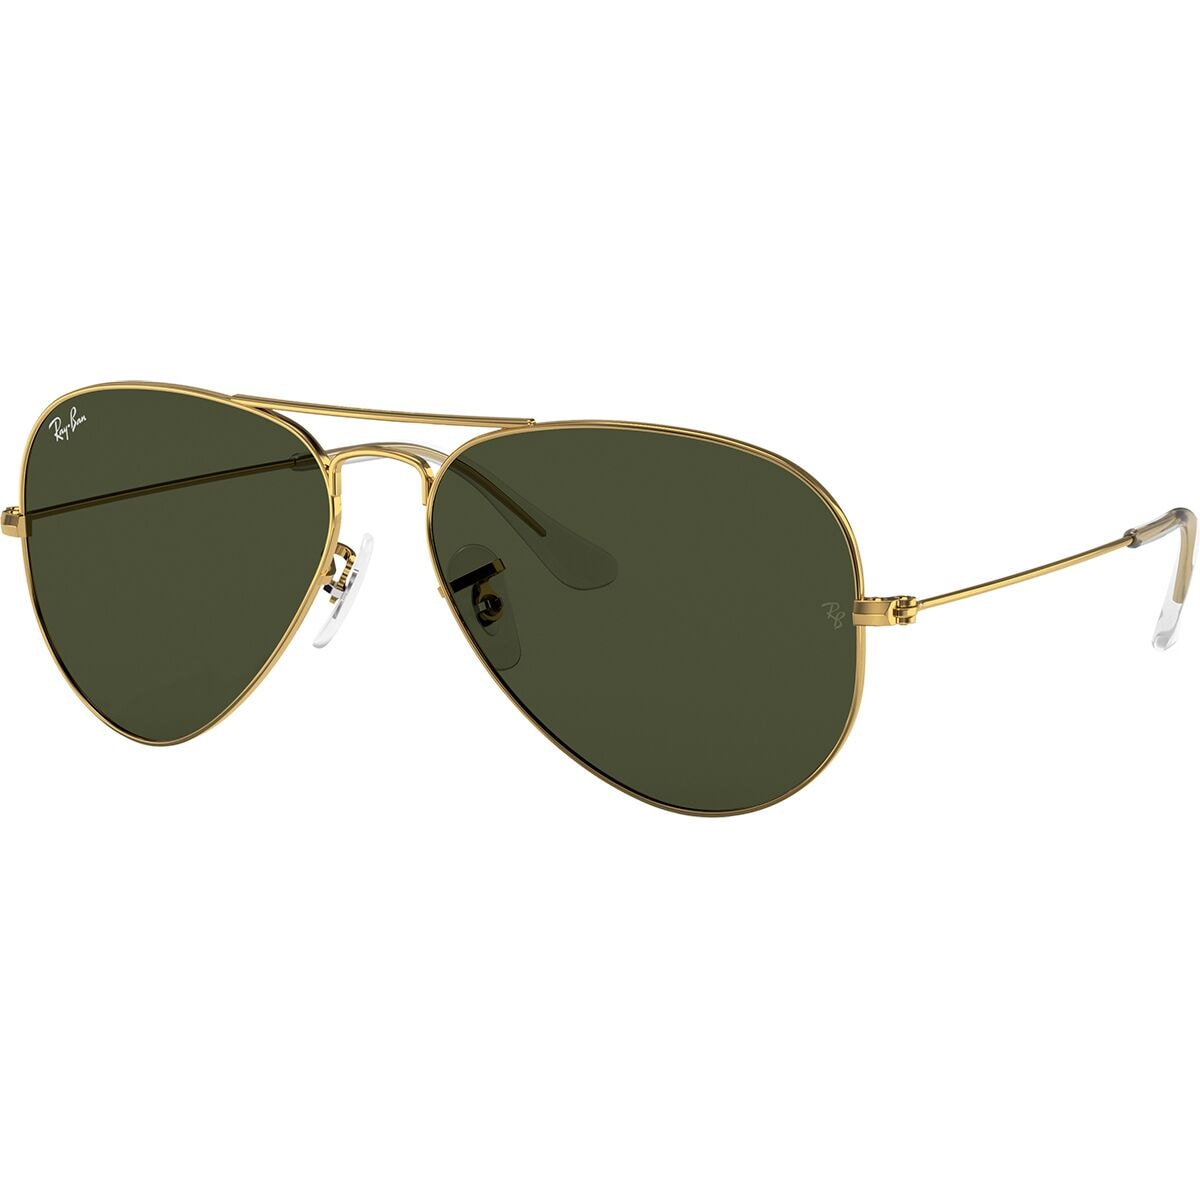 Большие металлические солнцезащитные очки-авиаторы Ray-Ban, цвет grey on legend gold/clear gradient grey солнцезащитные очки aviator unisex ray ban